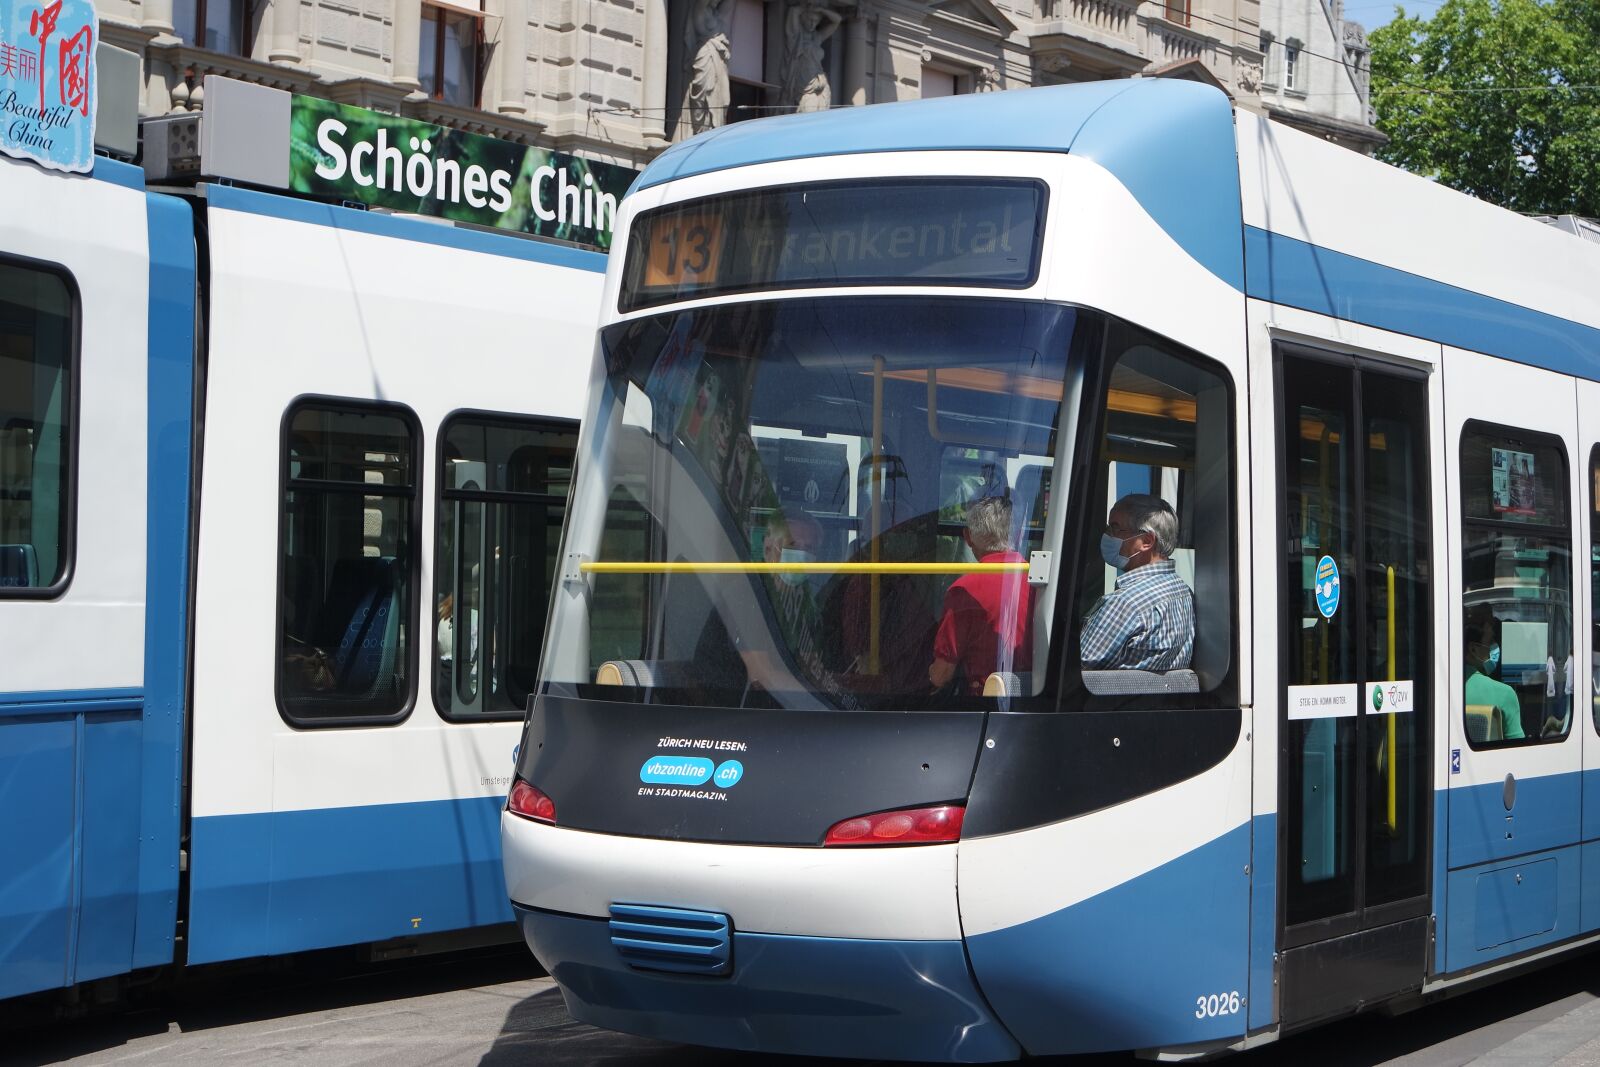 Samsung NX3000 sample photo. Zurich, parade ground, tram photography